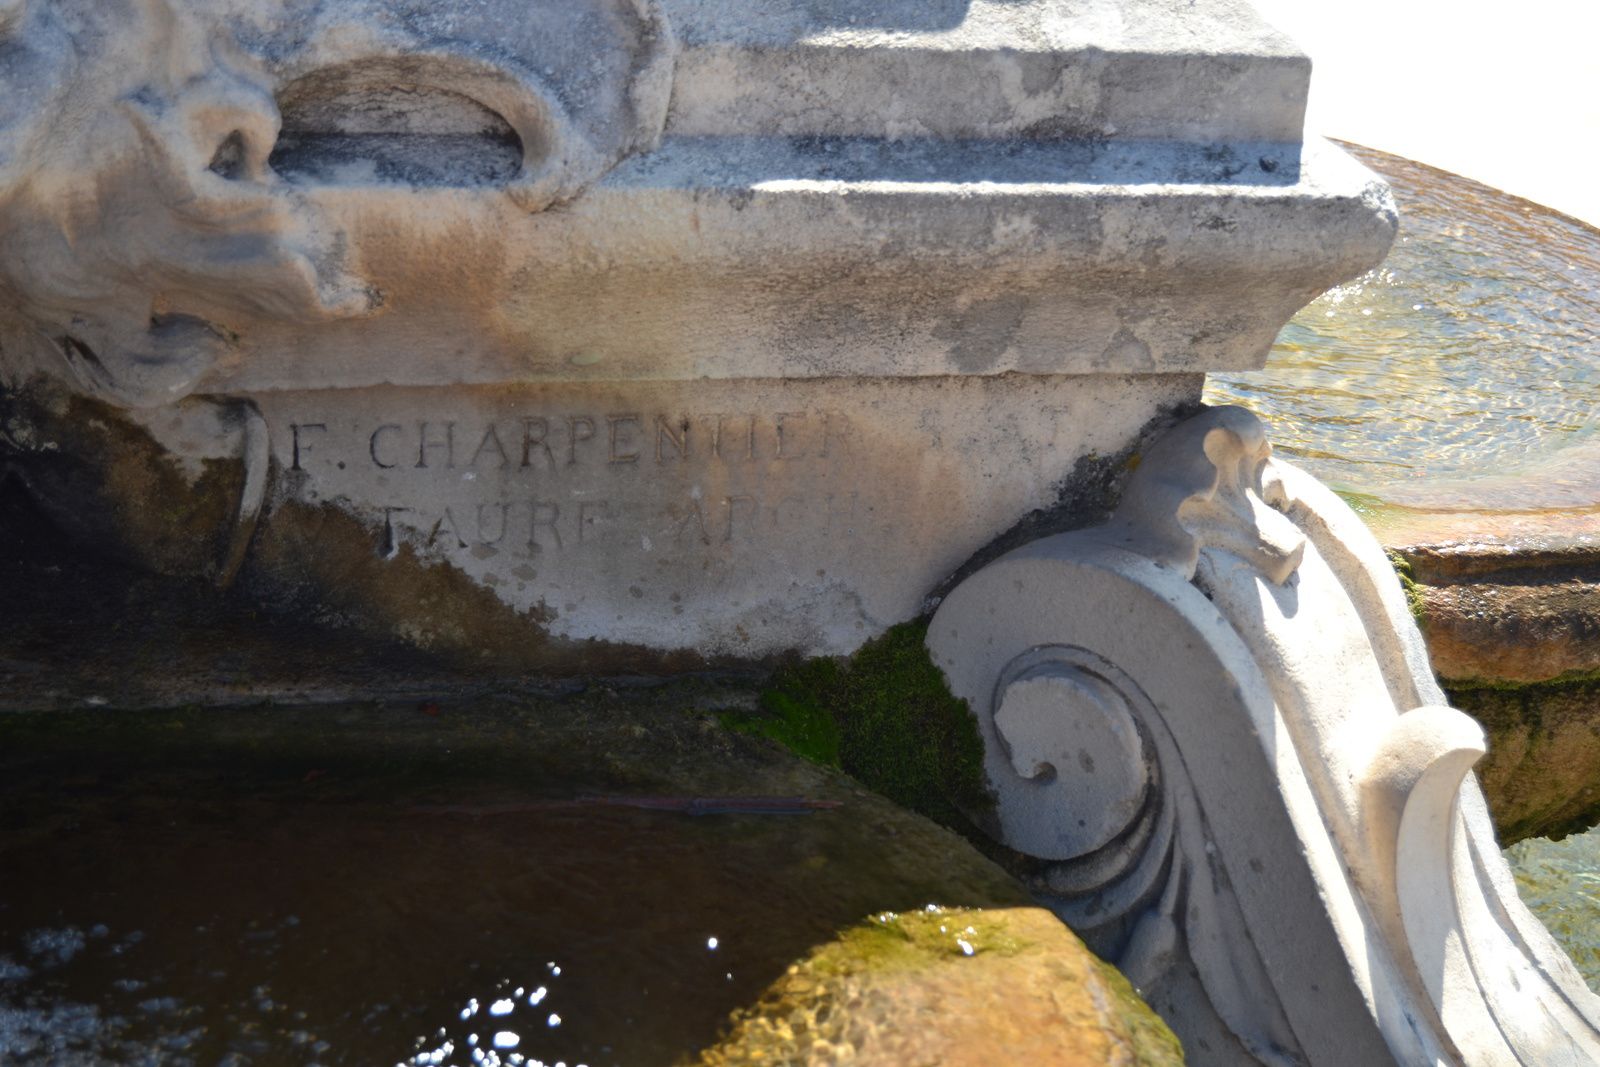 Les noms du sculpteur et de l'architecte sont gravées sur le côté :"F. Charpentier, V. Faure, Architecte.".